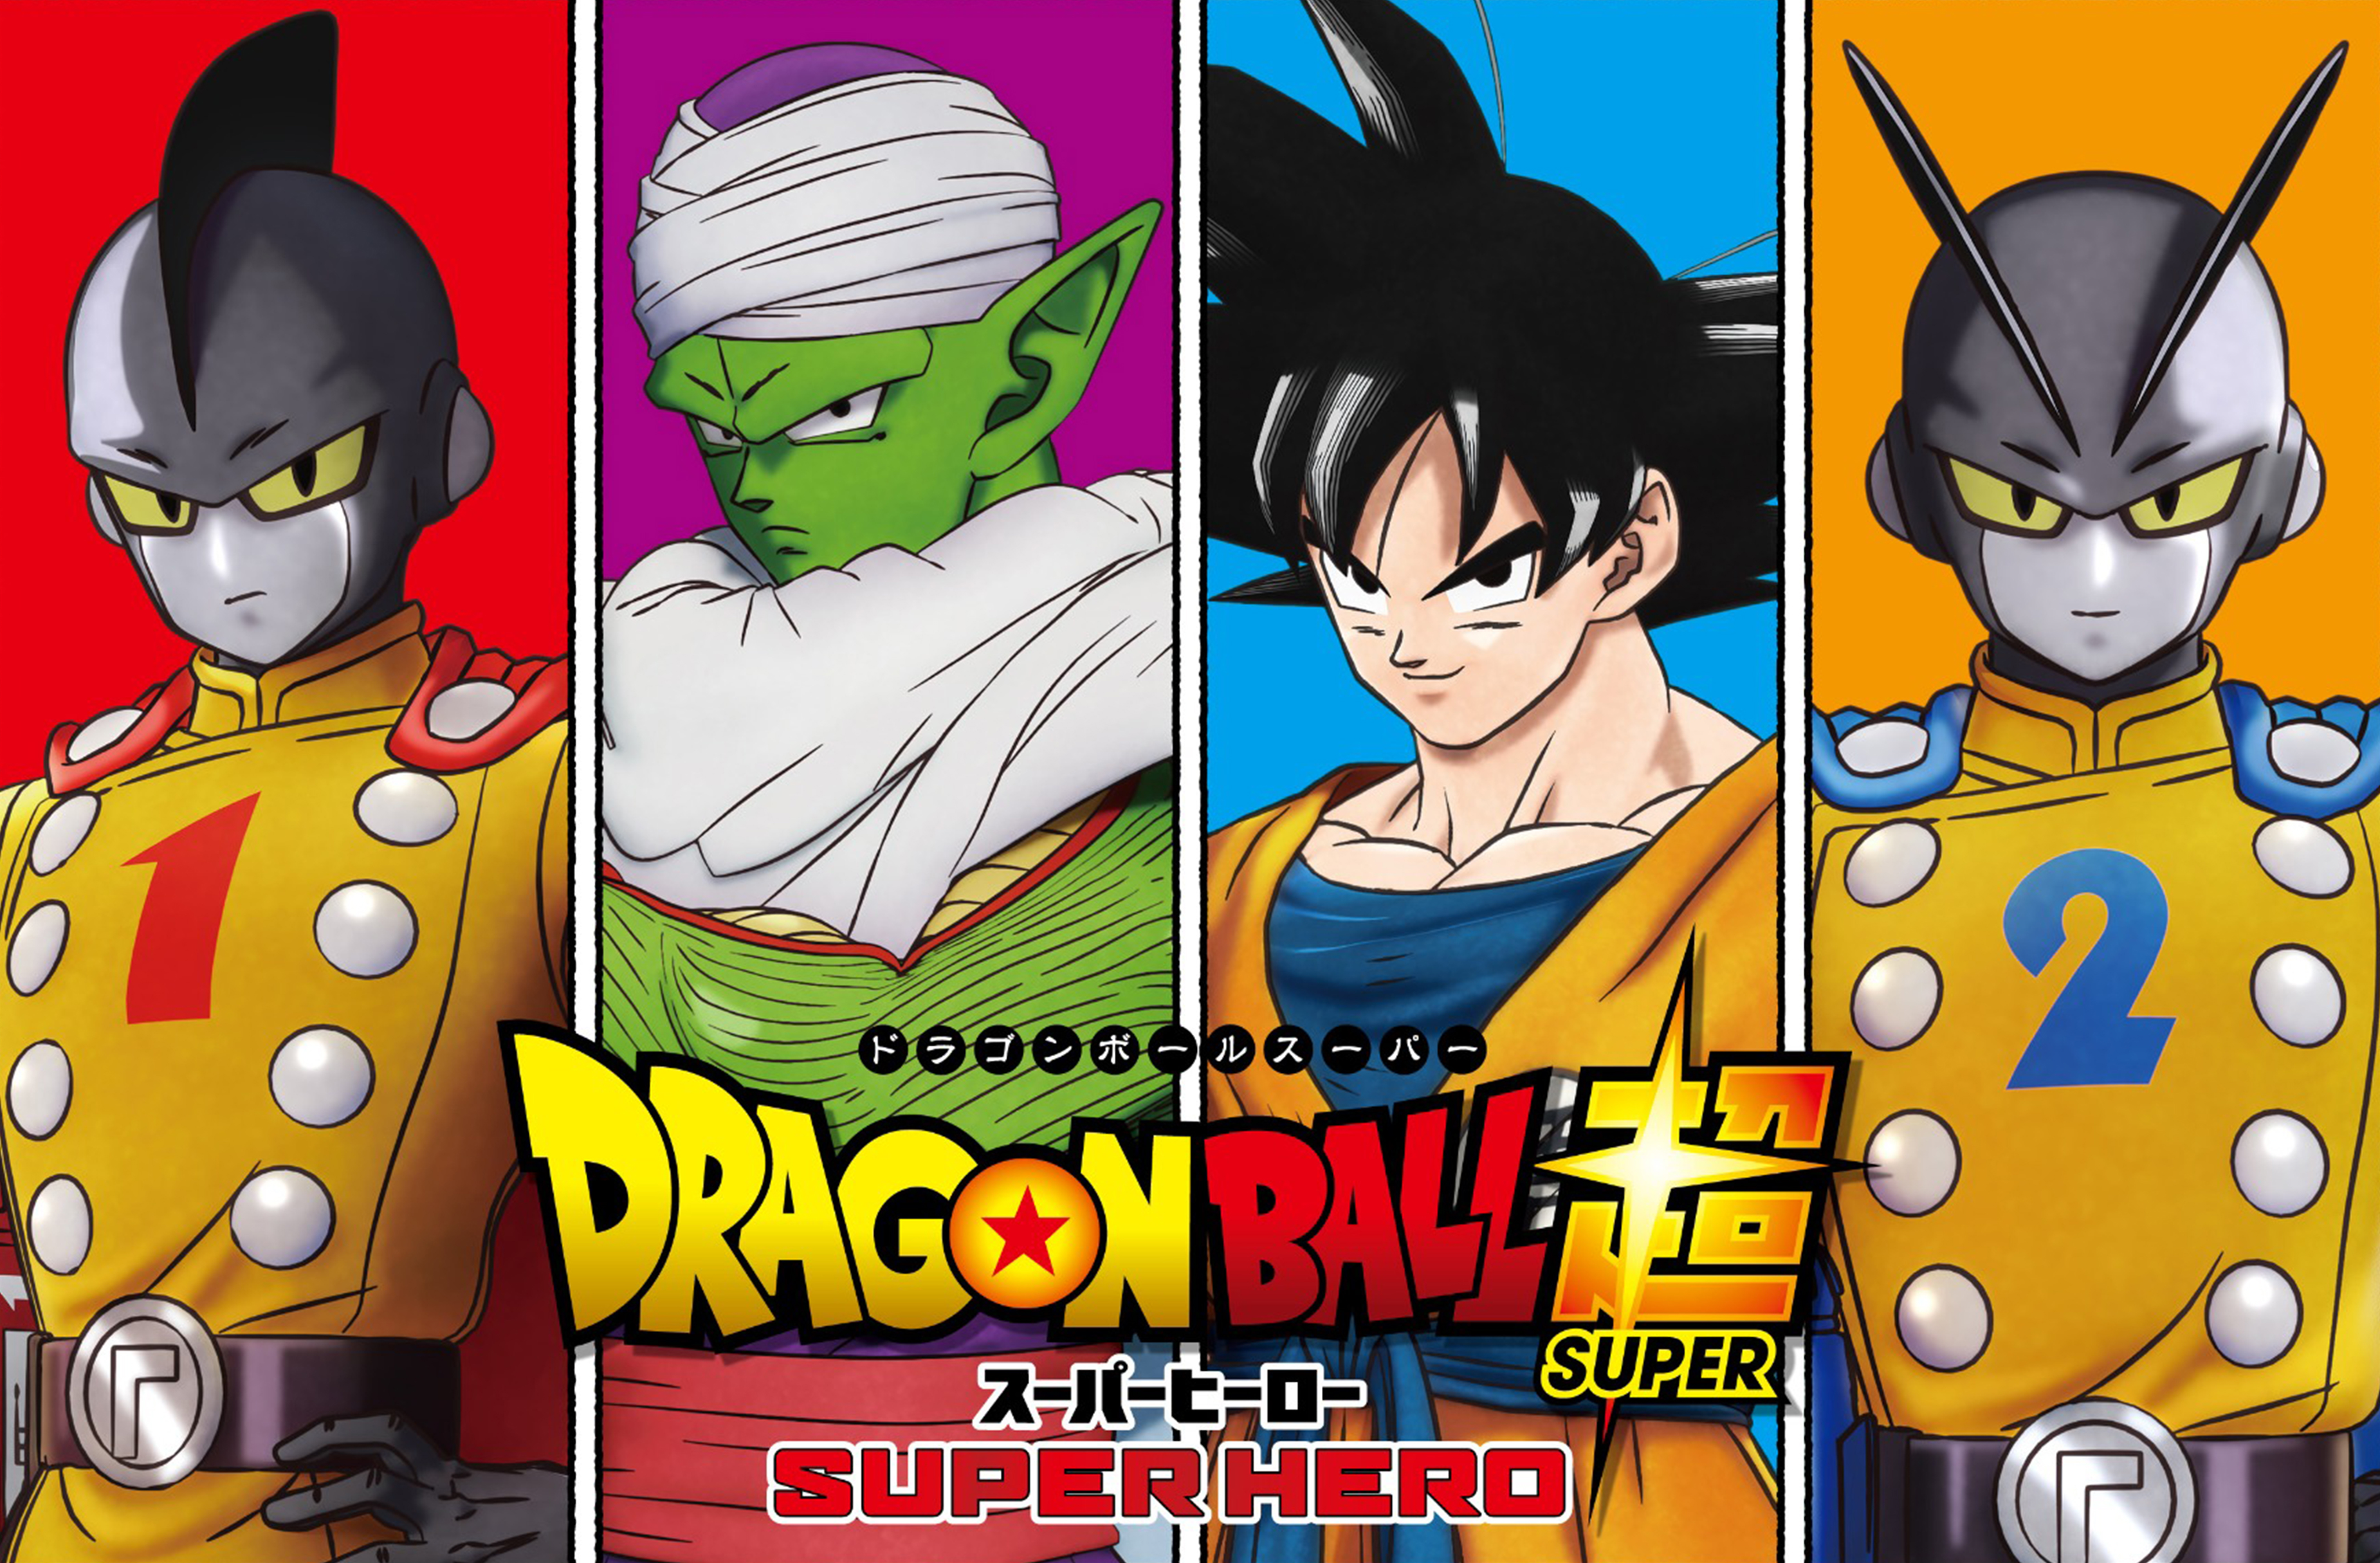 Confirmada la fecha de estreno en cines de “Dragon Ball Super: Super Hero”  en Latinoamérica - Infobae